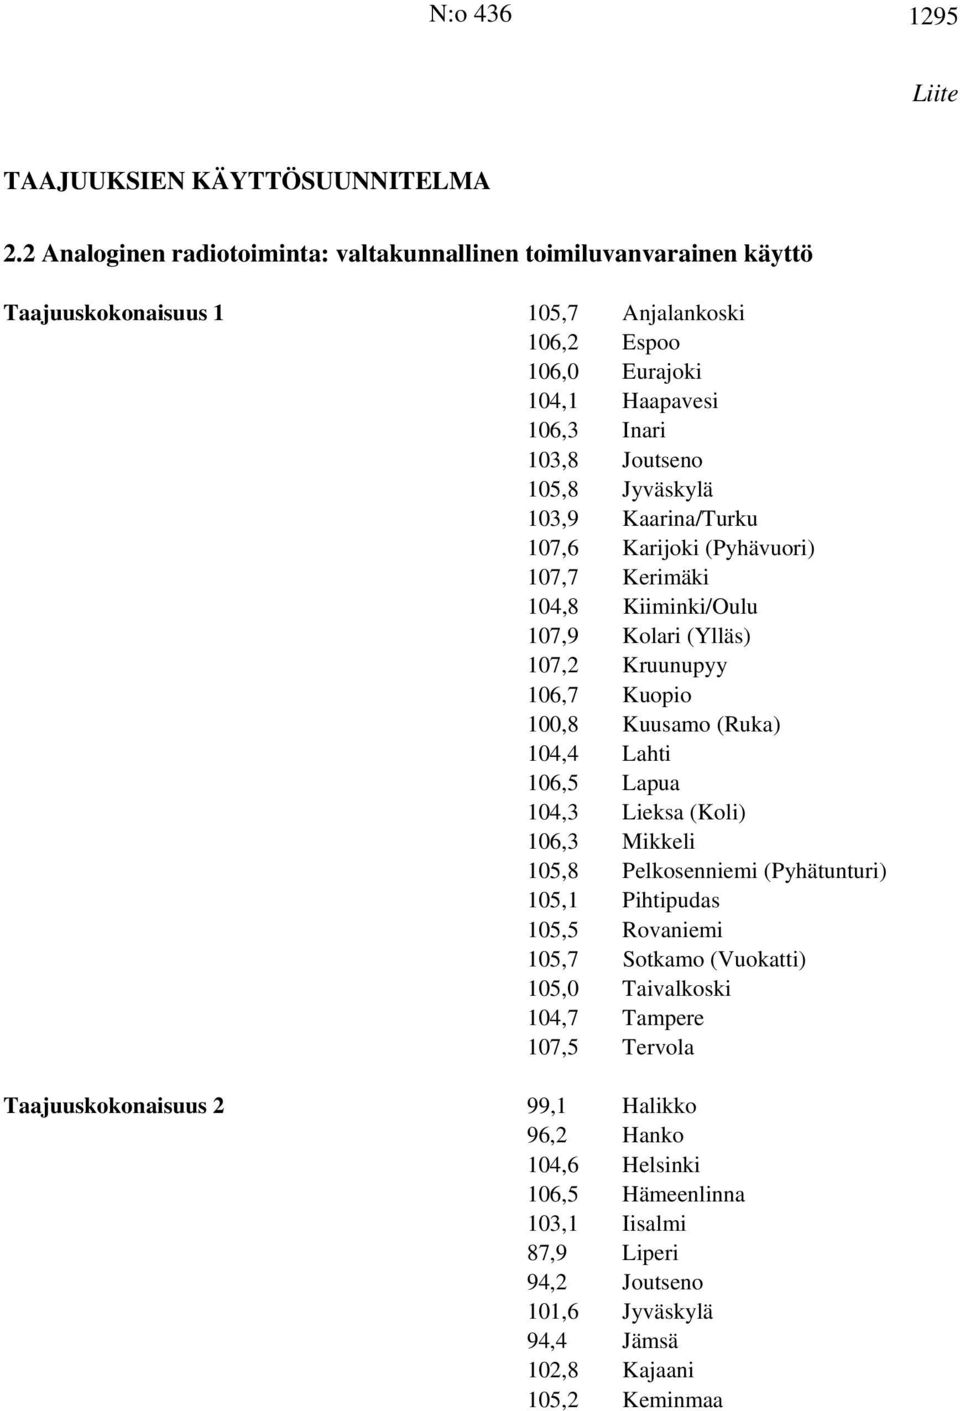 Jyväskylä 103,9 Kaarina/Turku 107,6 Karijoki (Pyhävuori) 107,7 Kerimäki 104,8 Kiiminki/Oulu 107,9 Kolari (Ylläs) 107,2 Kruunupyy 106,7 Kuopio 100,8 Kuusamo (Ruka) 104,4 Lahti 106,5 Lapua 104,3